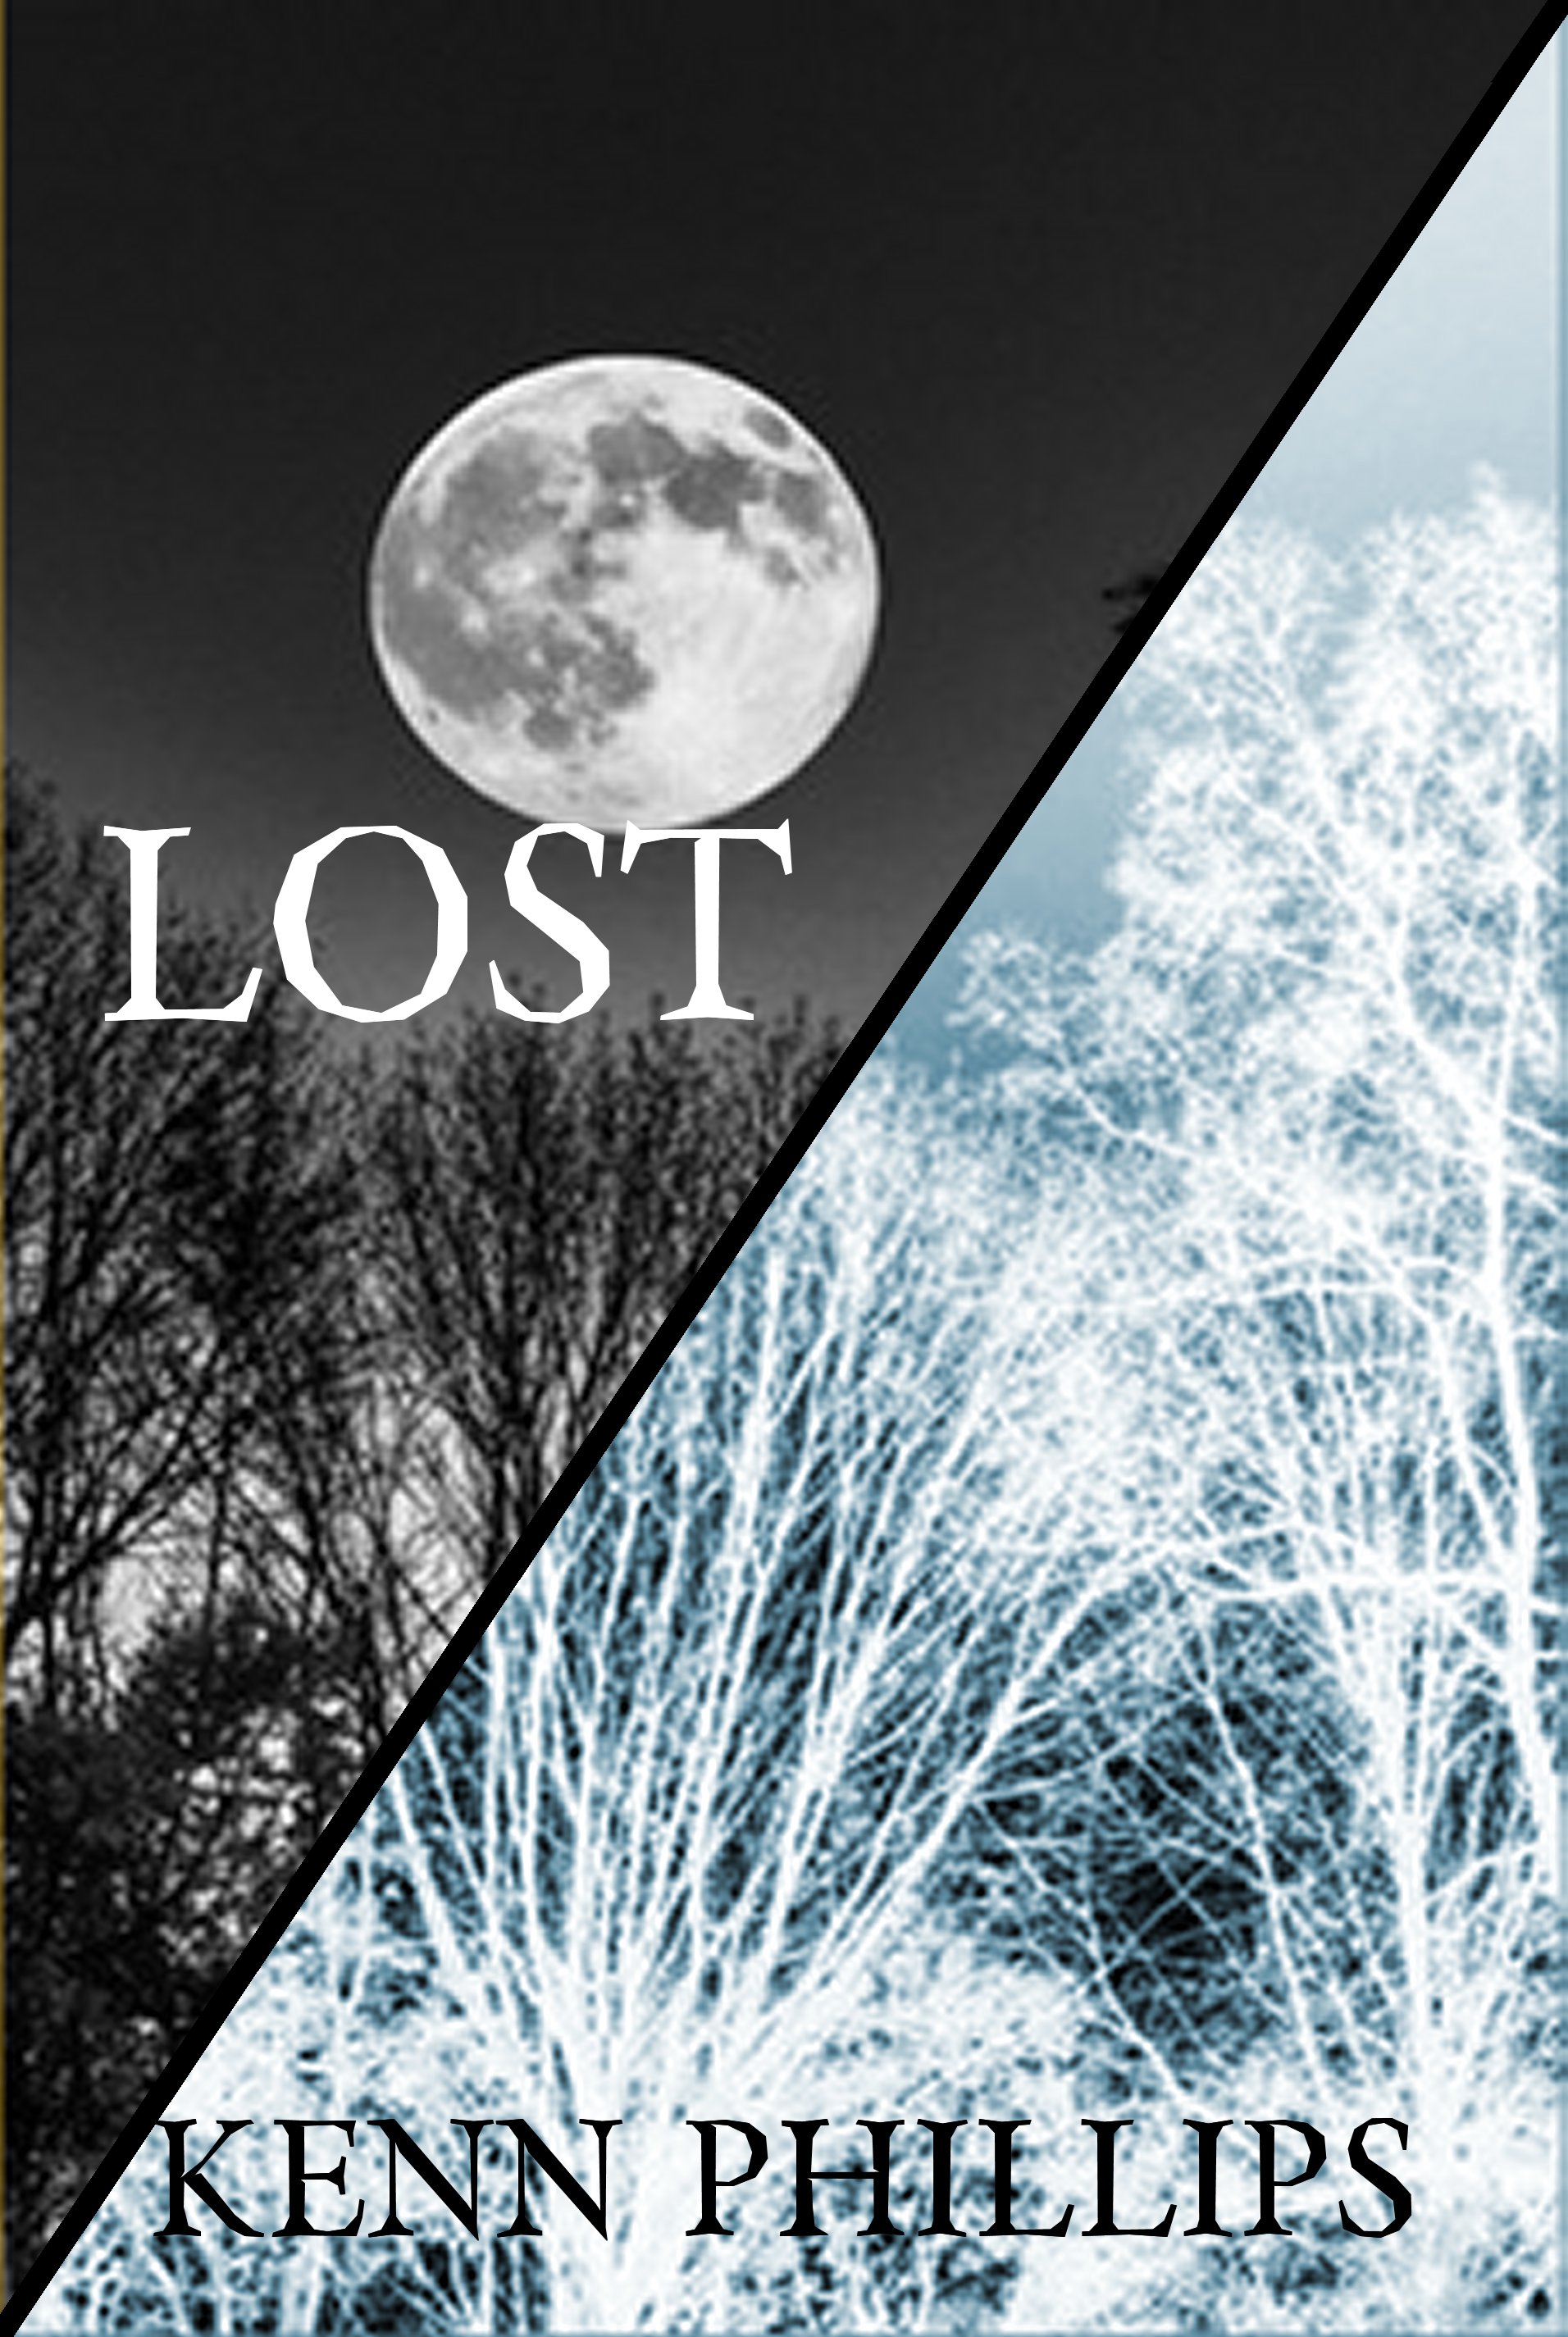 LOST E-book Cover